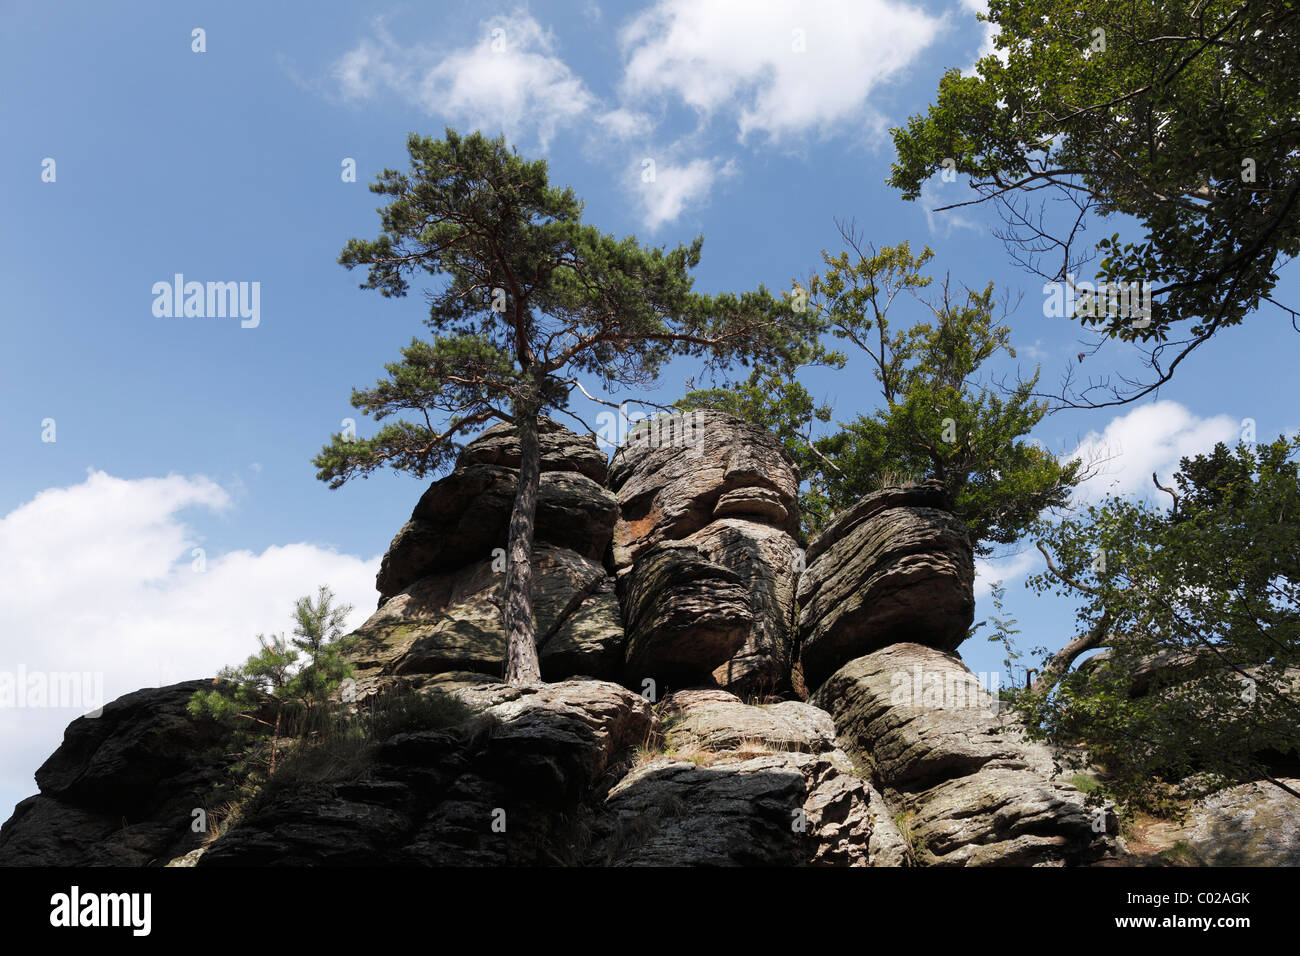 Hoher Stein, montaña, Dunkelsteinerwald Muehlberg, Wachau, Mostviertel, Baja Austria, Austria, Europa Foto de stock